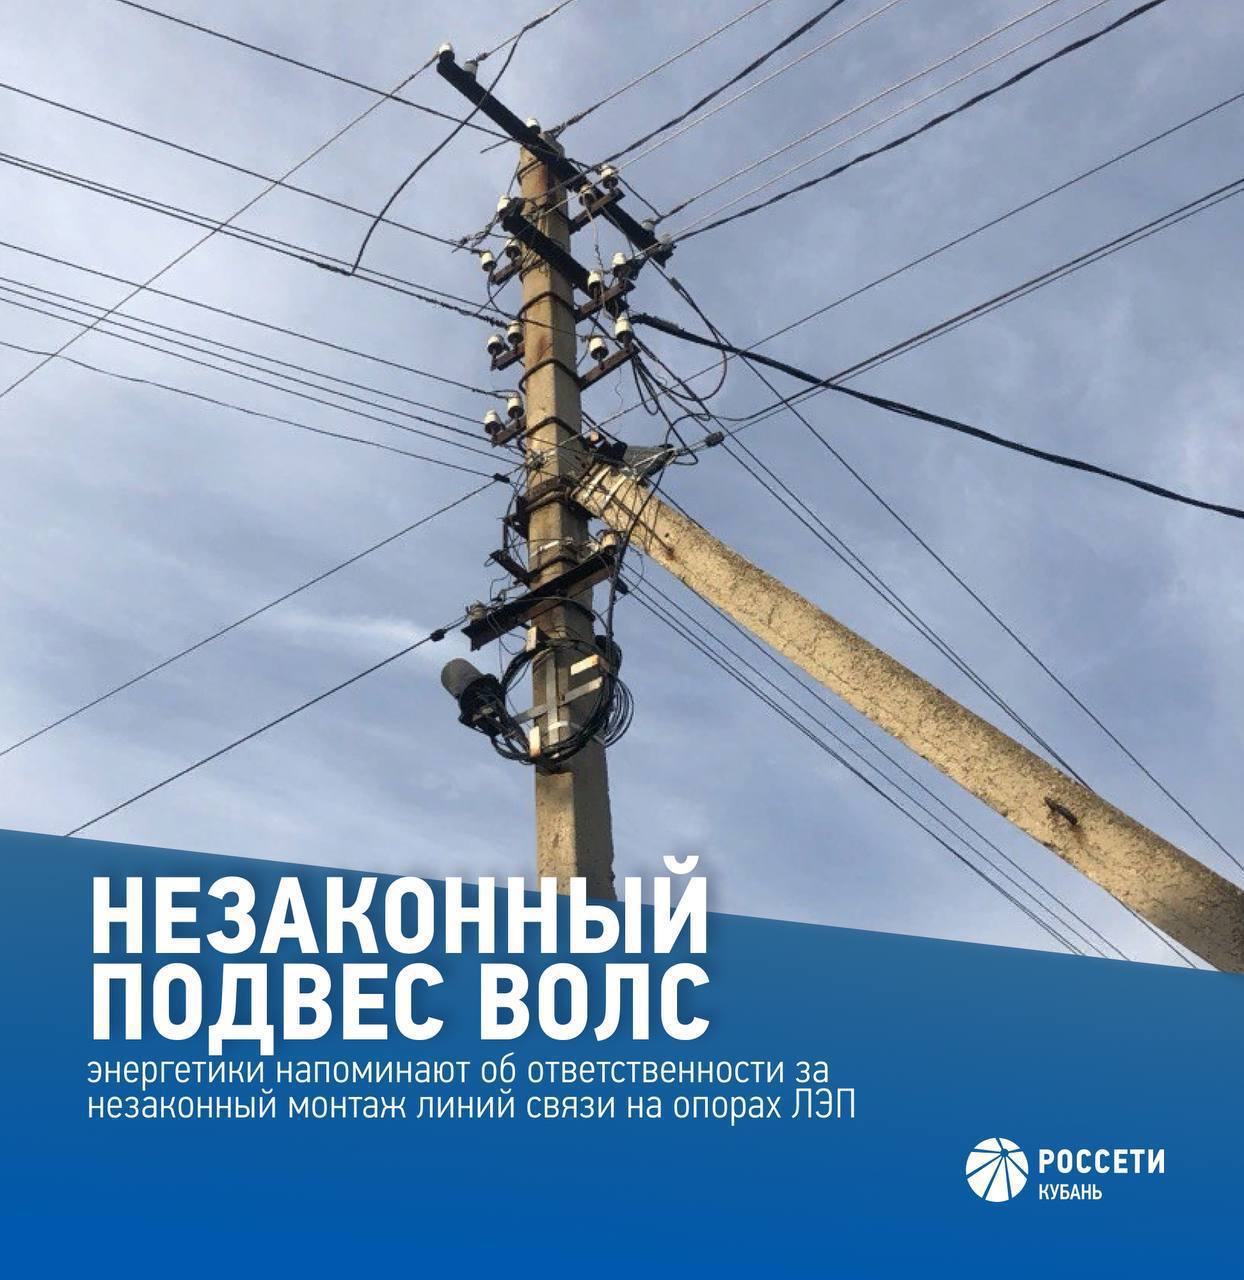 Краснодарский филиал #РоссетиКубань призывает операторов связи, собственников оборудования связи не допускать нарушений и использовать электросетевое оборудование на законных основаниях